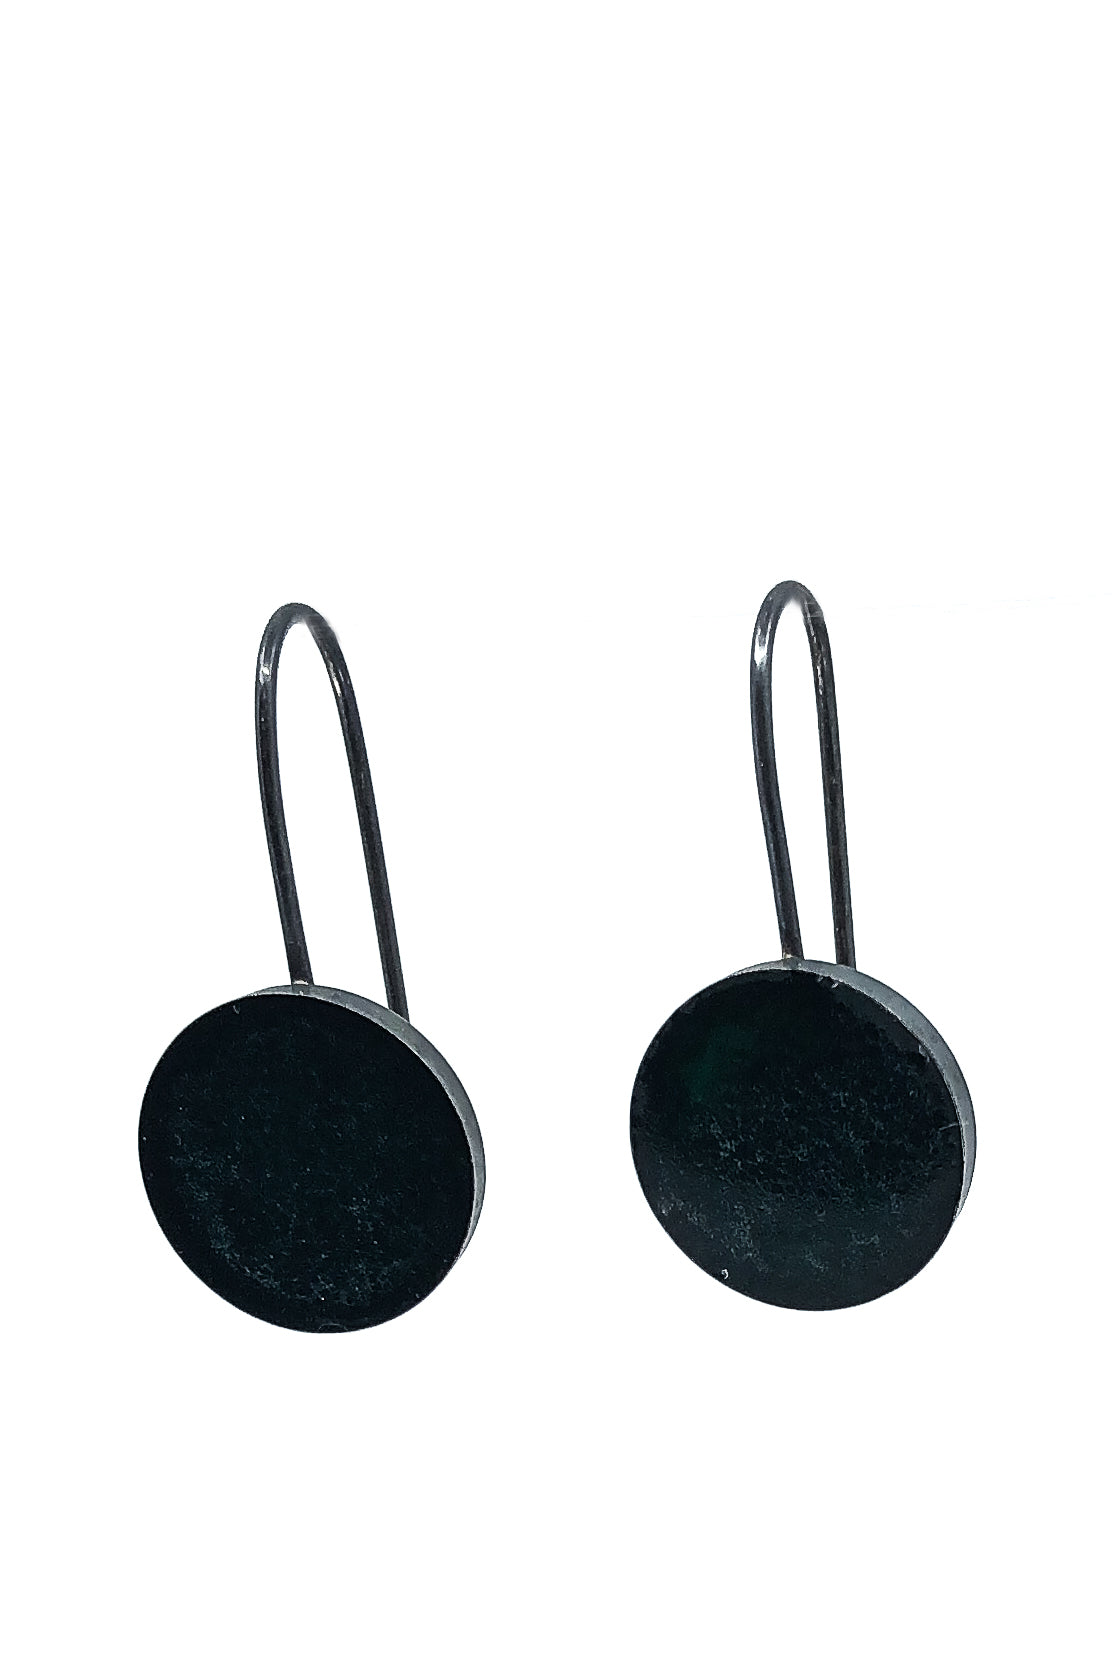 minimalistische, schlichte Ohrhänger aus oxidiertem 925er Sterlingsilber, gefüllt mit dunkelgrünem, fast schwarzem Harz